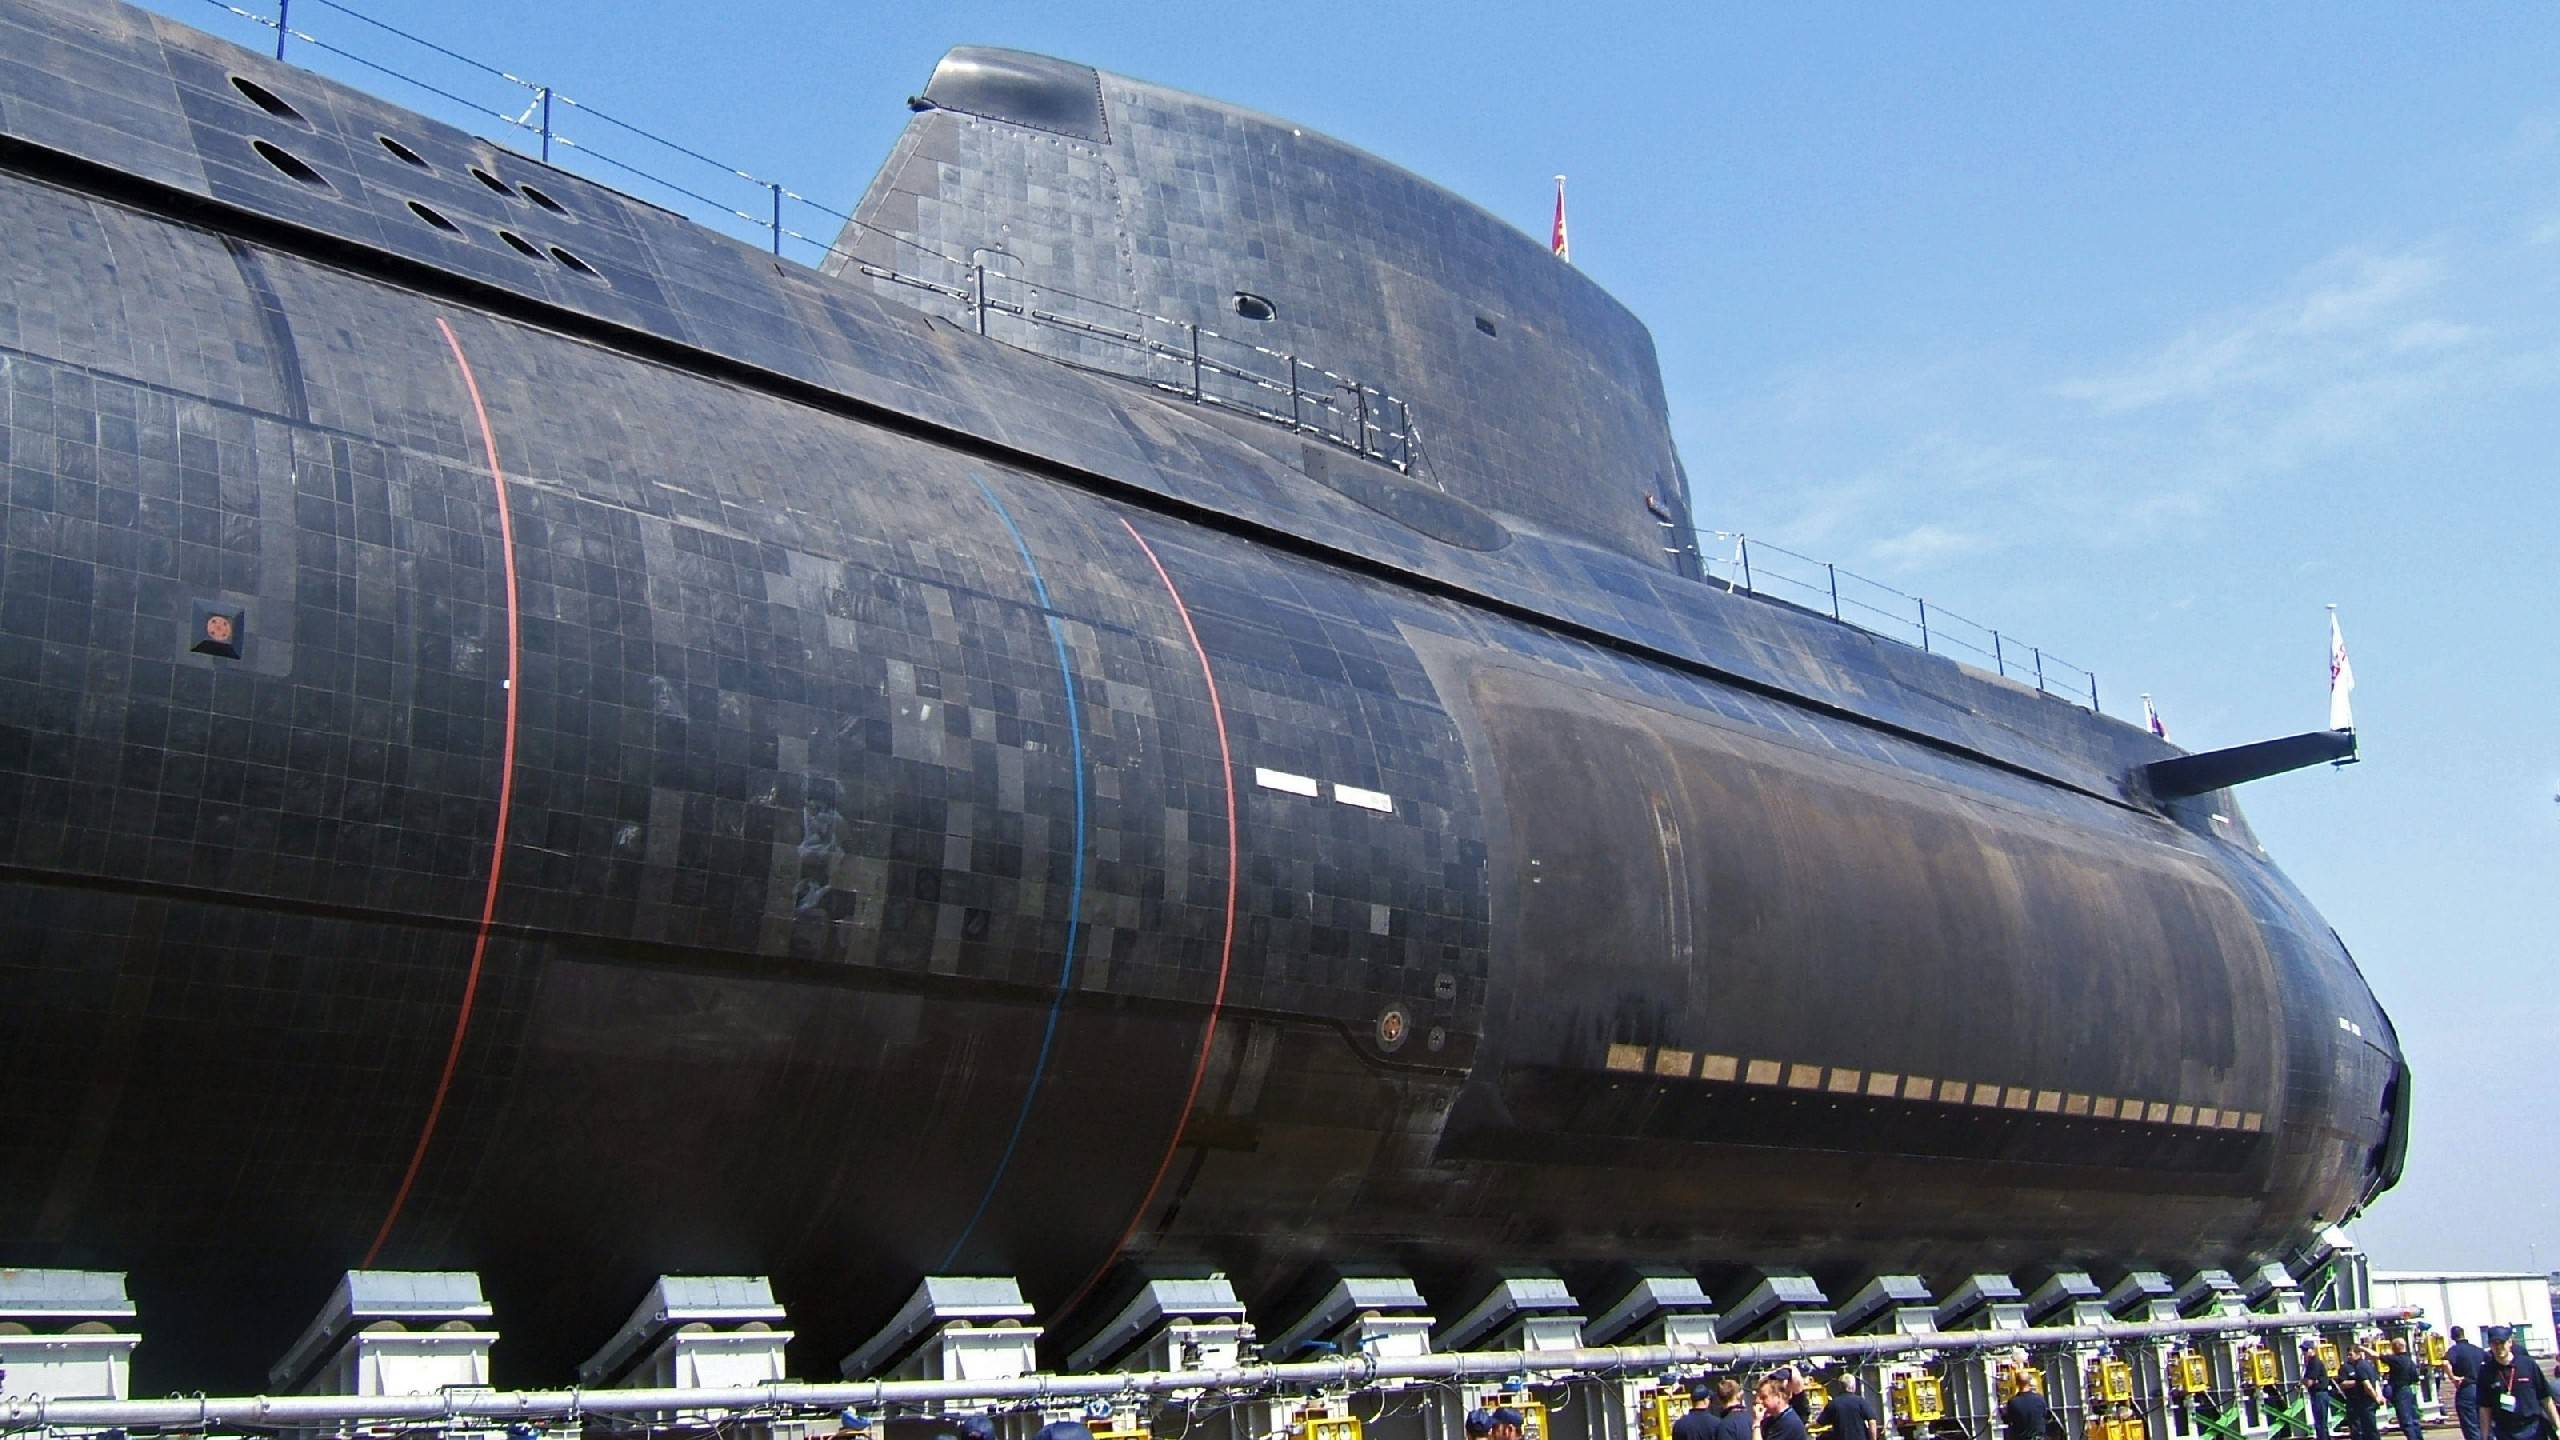 submarine sonar array